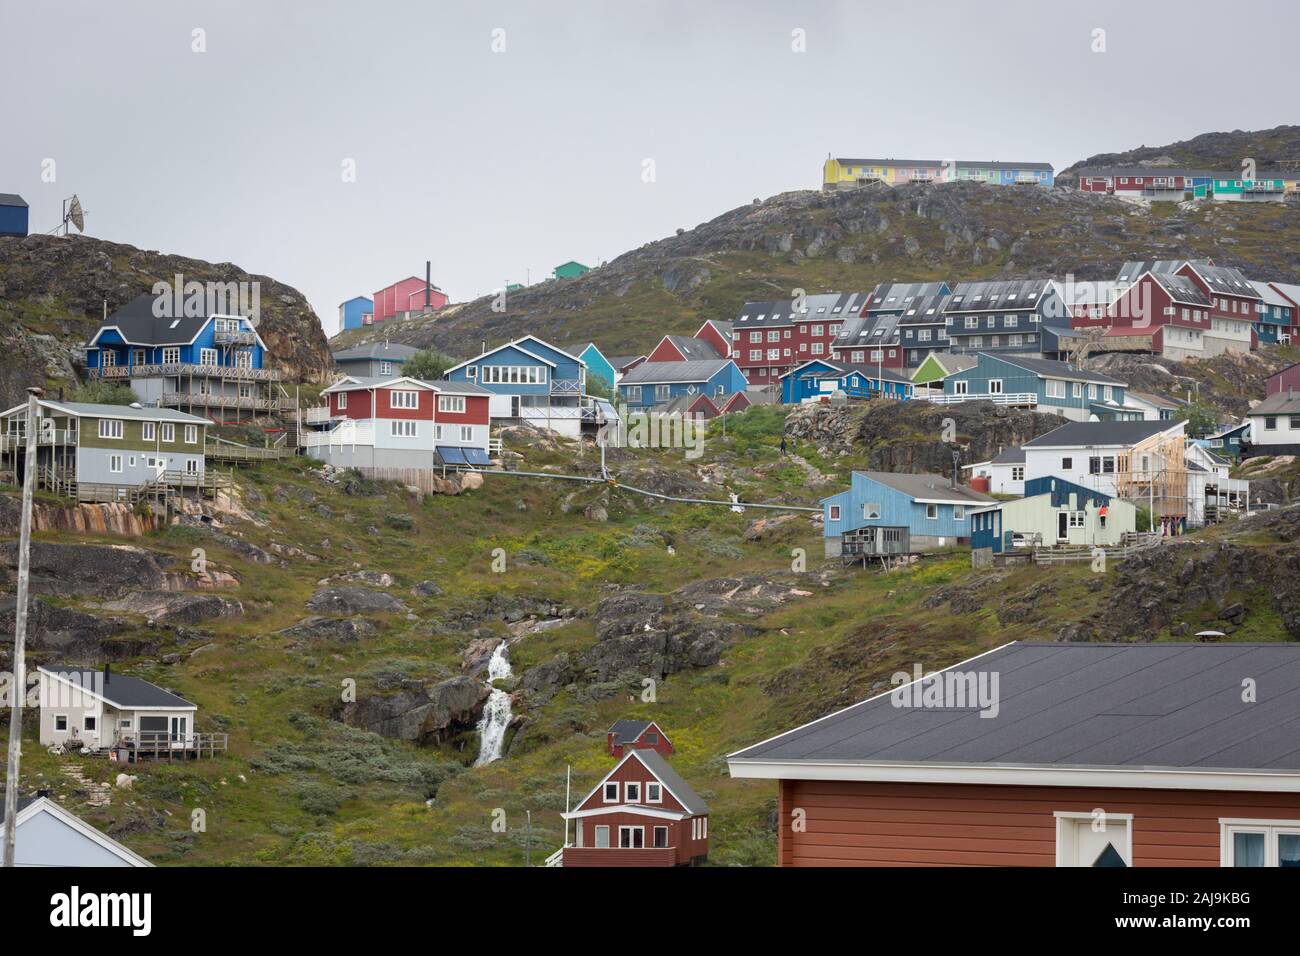 Bunte Holzhäuser eingebettet am Hang in Qaqortoq, die bevölkerungsreichste Stadt im südlichen Grönland. Stockfoto